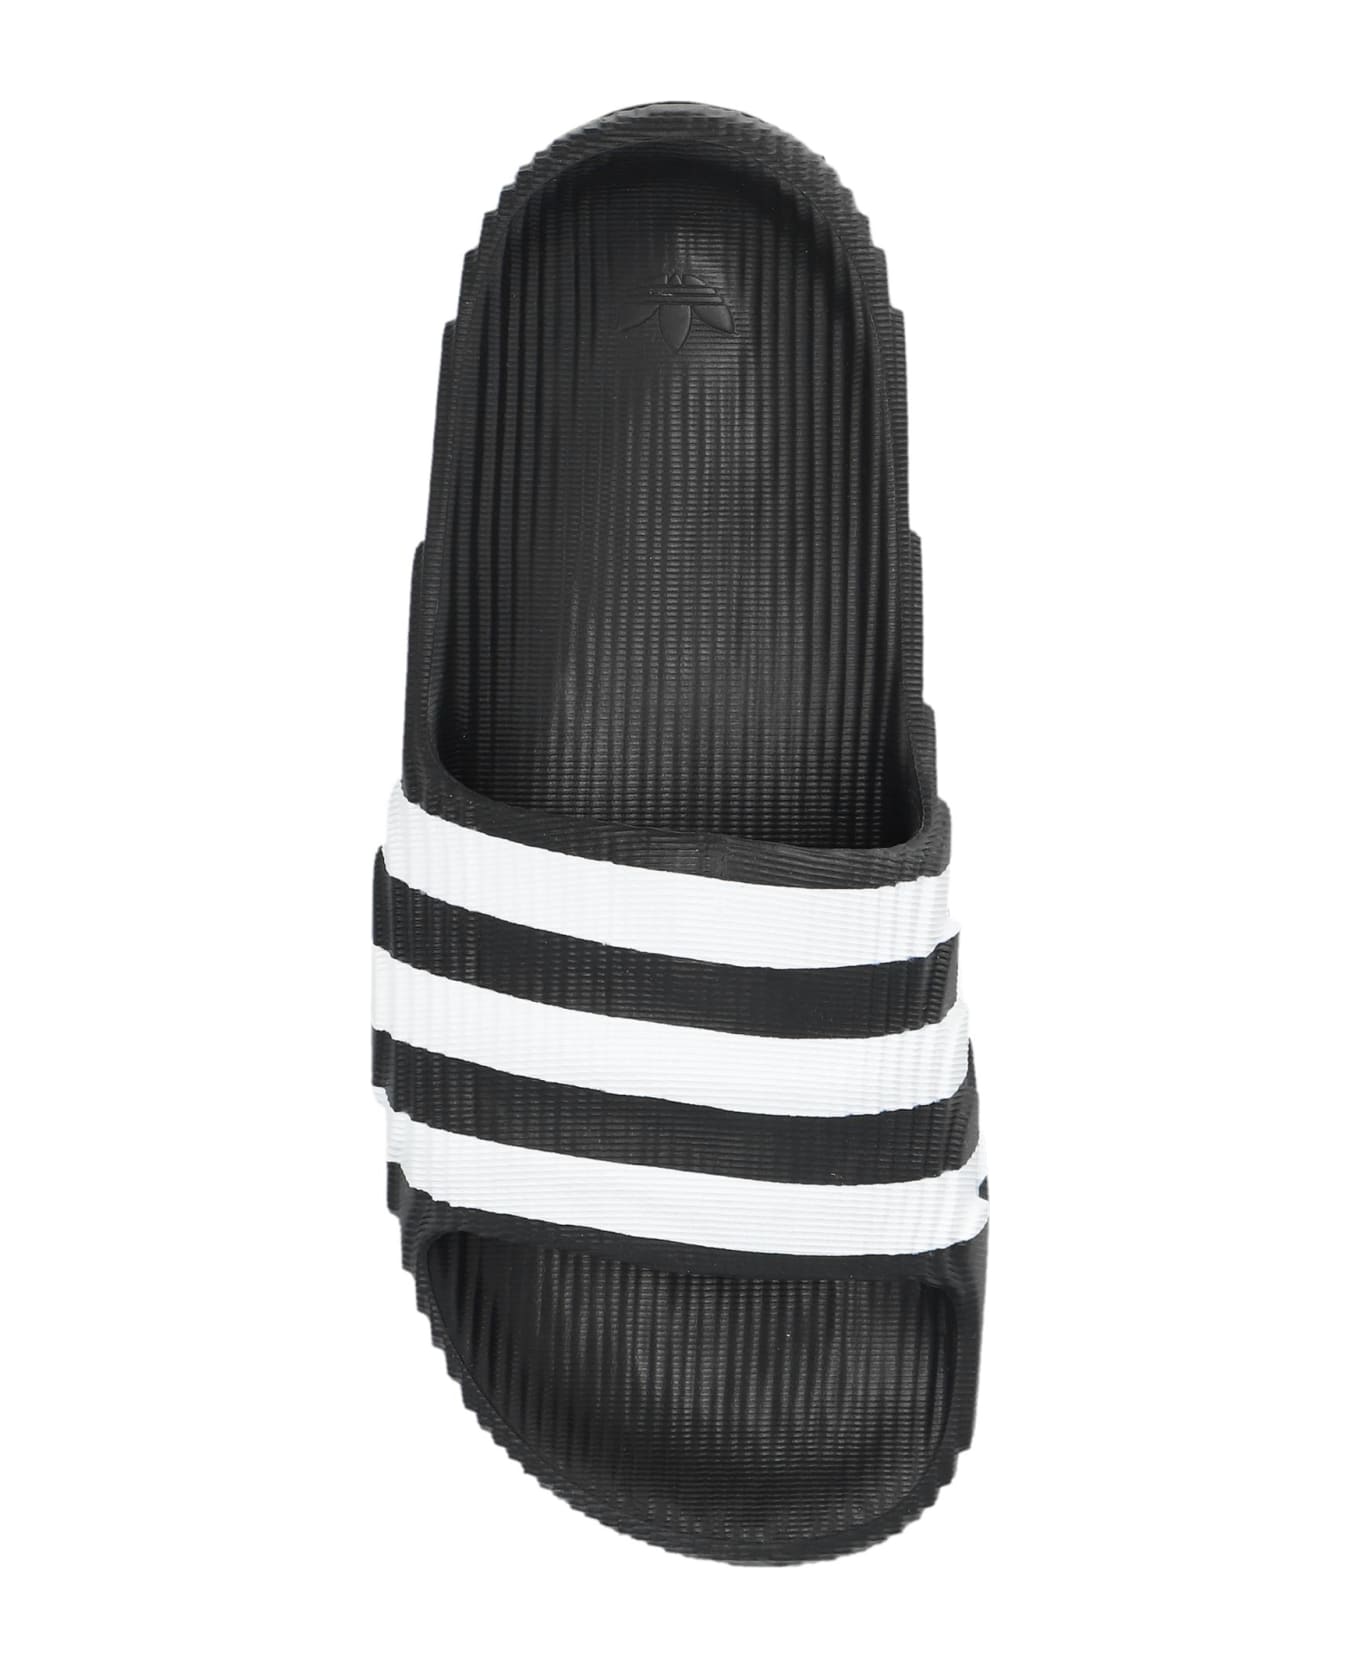 Adidas Originals 'adilette 22' Slides - Black